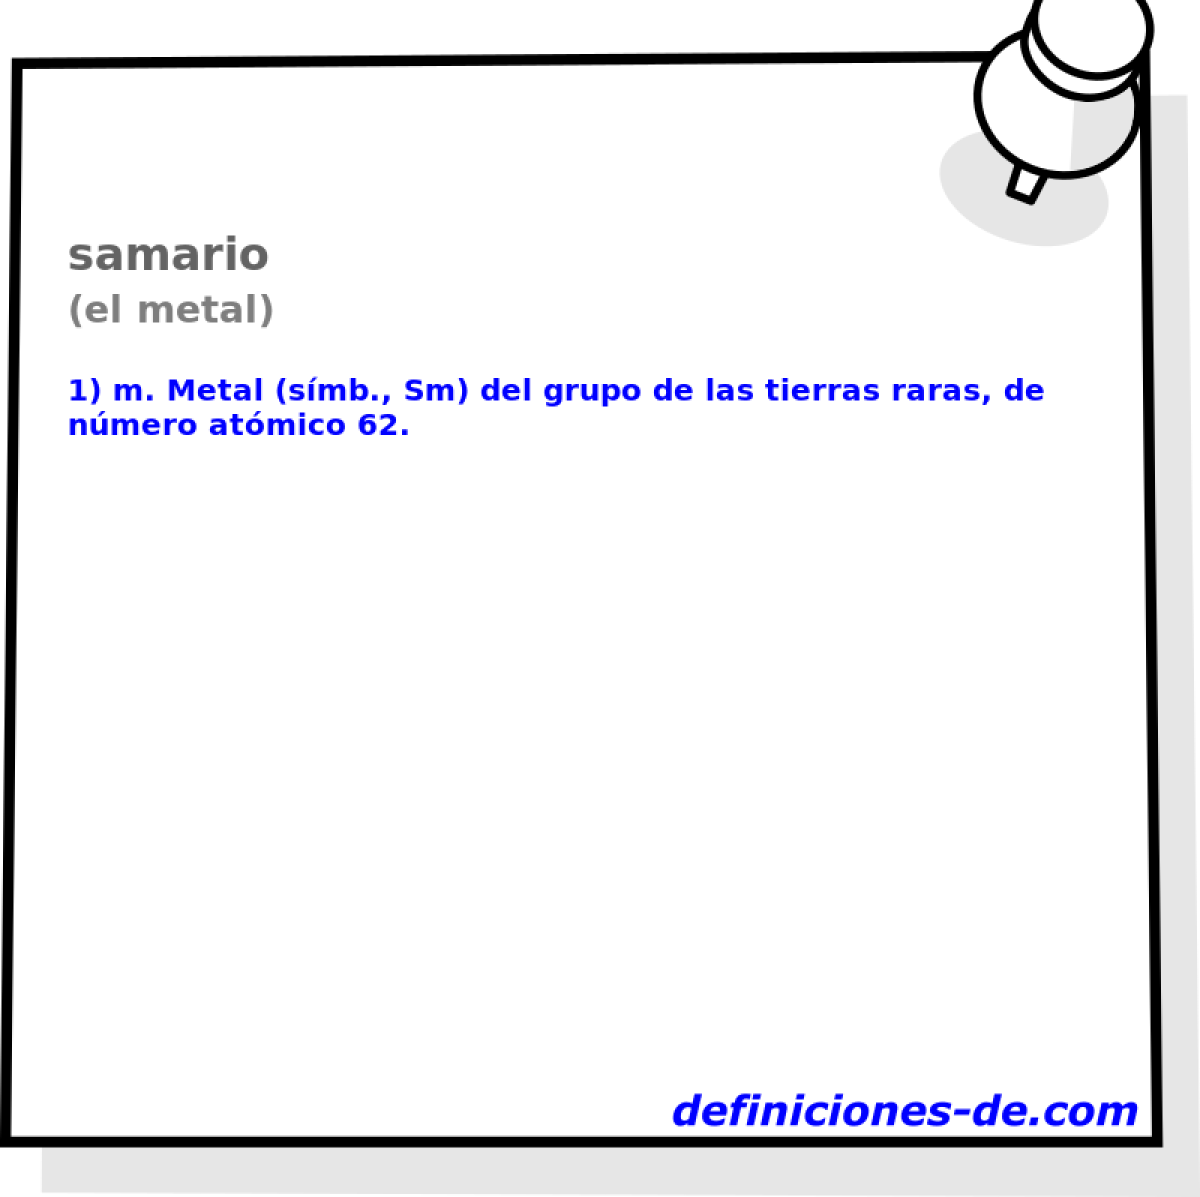 samario (el metal)